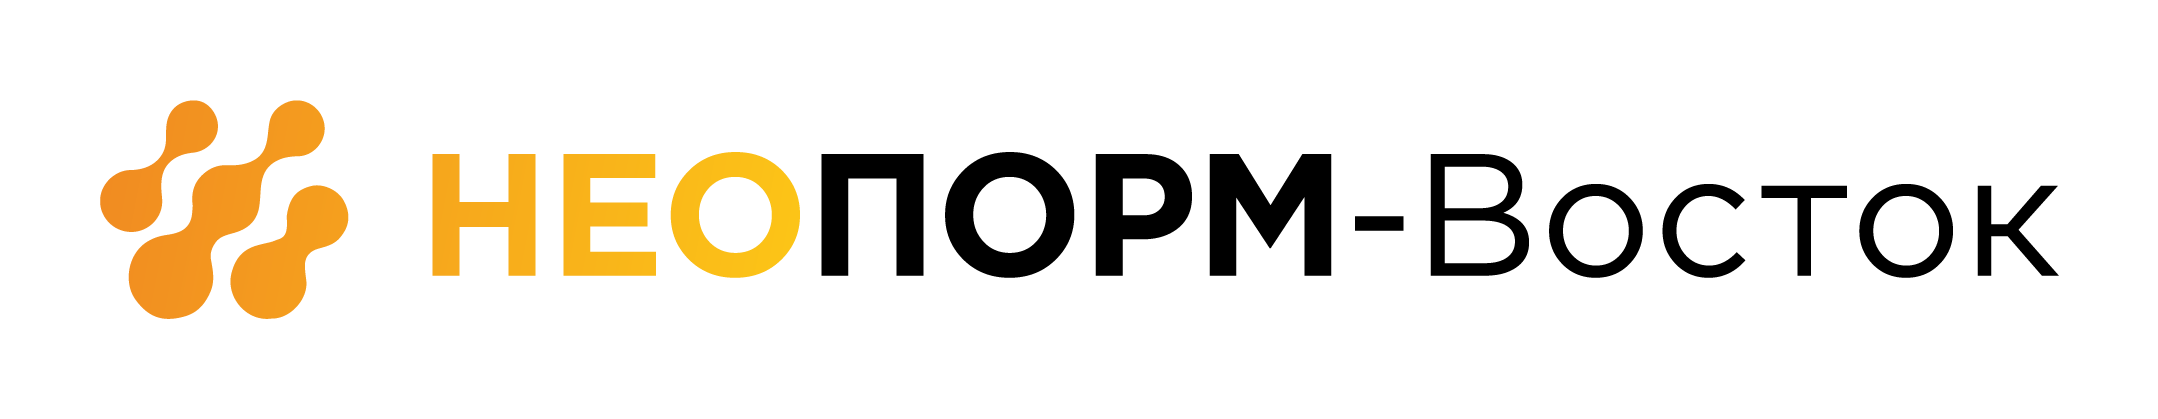  Официальный представитель марки пеностекла НЕОПОРМ ® в Уральском, Сибирском и Дальневосточном регионах РФ 